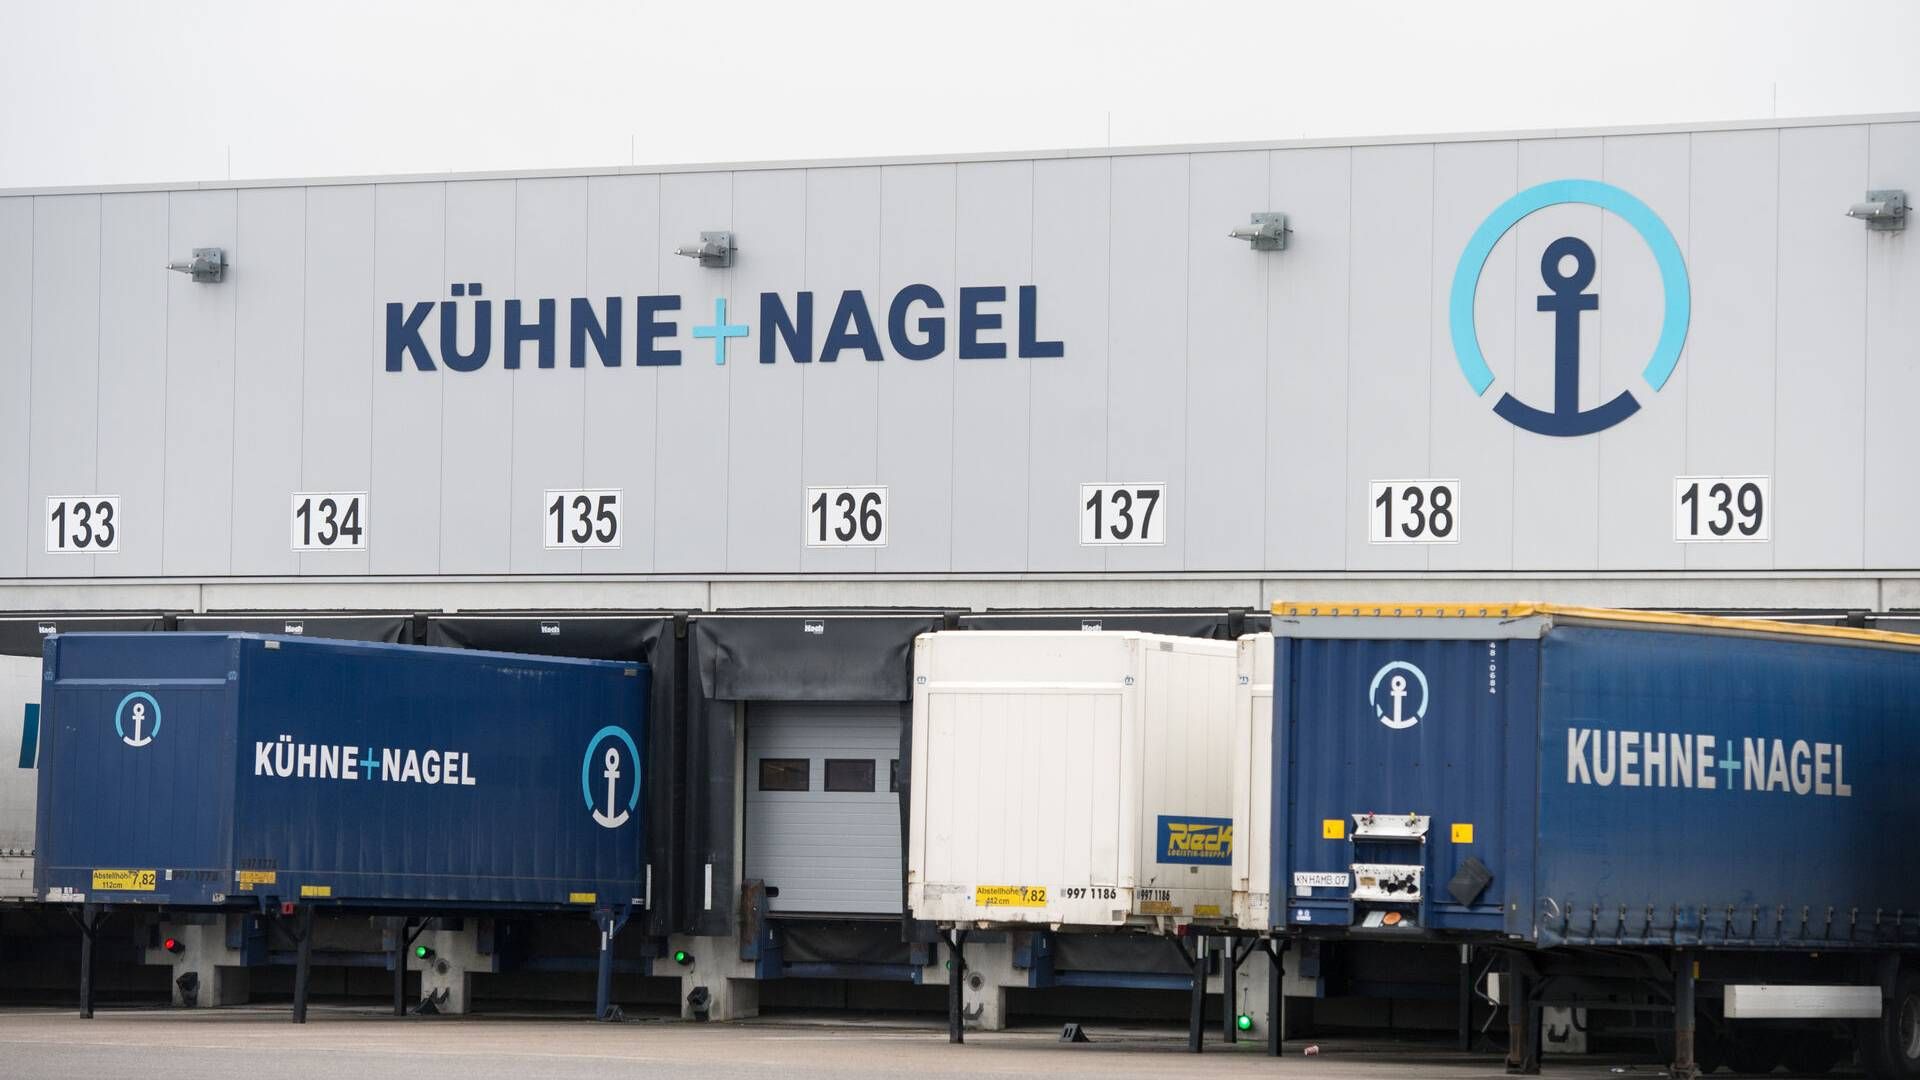 Flere analytikere ser positive tegn i Kuehne+Nagels søfragtsdivision, hvor volumen er vokset. | Foto: Daniel Reinhardt/AP/Ritzau Scanpix